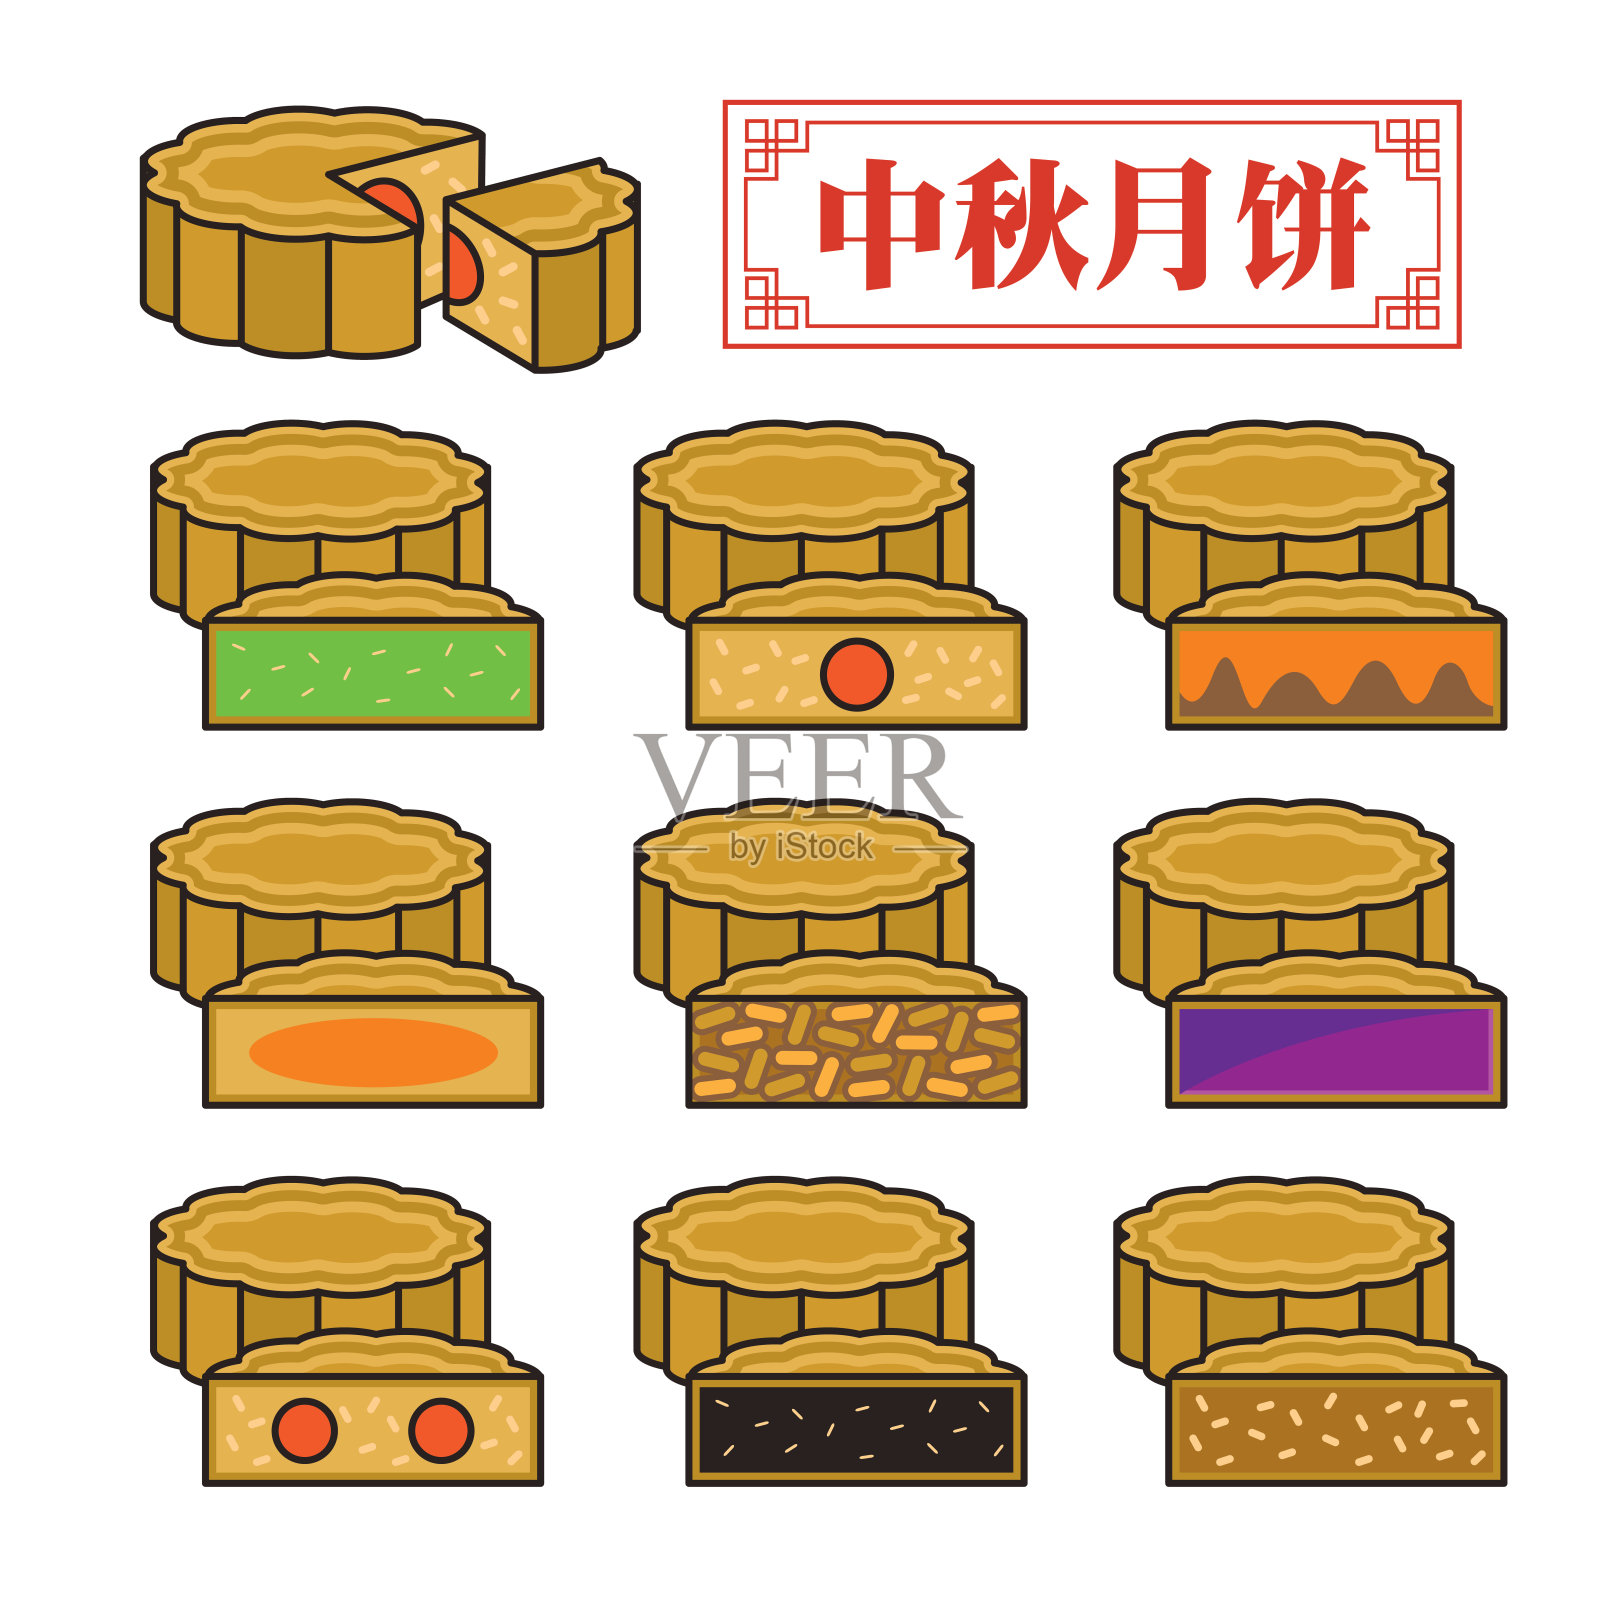 一套矢量月饼与不同的配料馅和味道。中文翻译:中秋节月饼设计元素图片